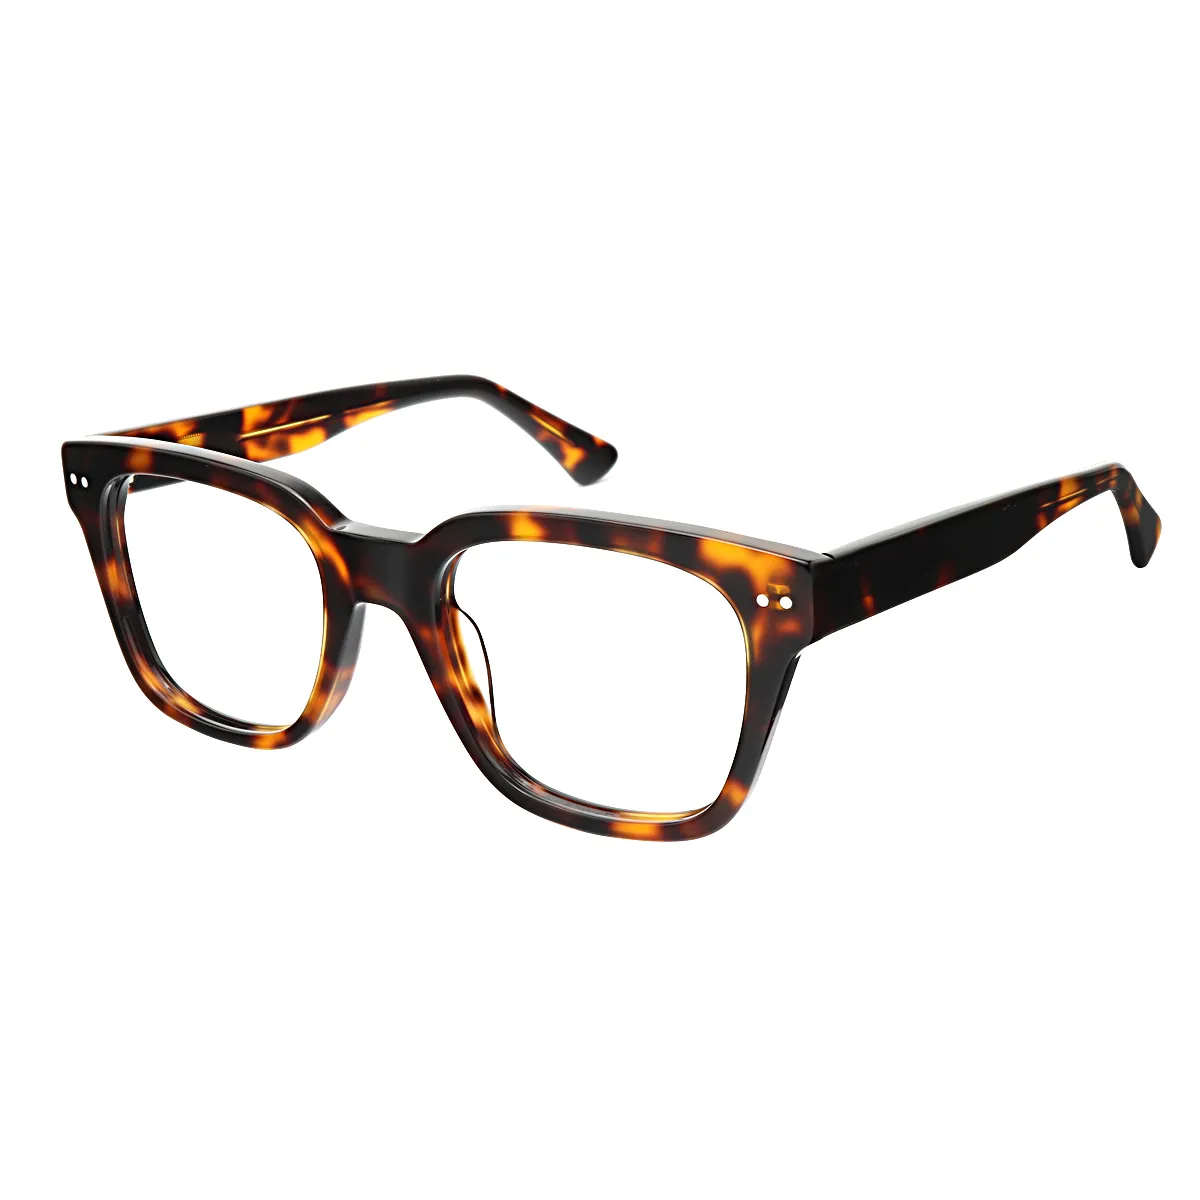 Unique - Square Tortoiseshell Glasses for Men & Women